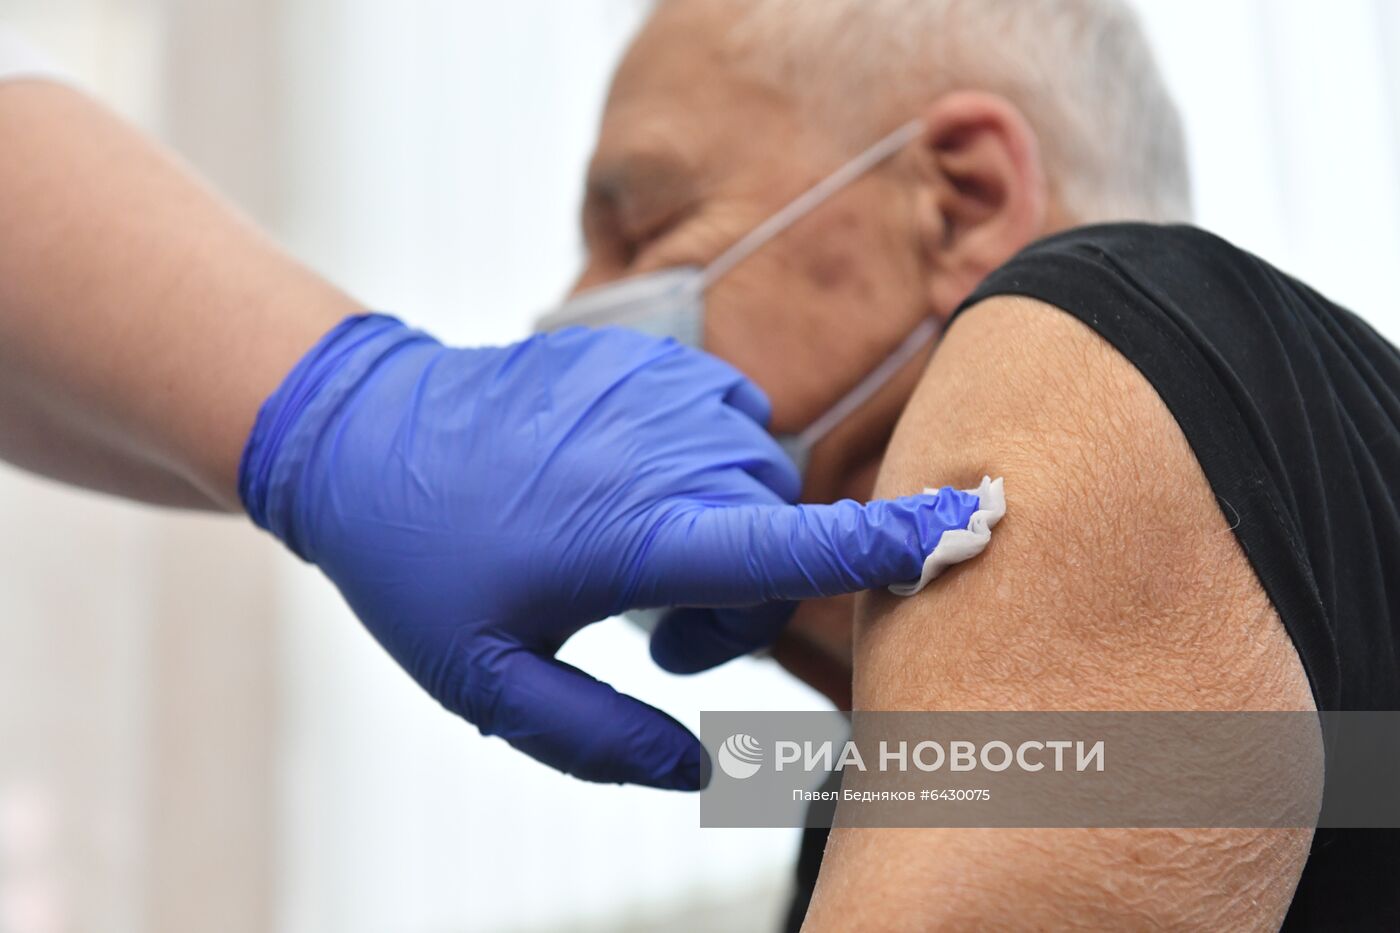 В Москве началась вакцинация от COVID-19 для людей старше 60 лет